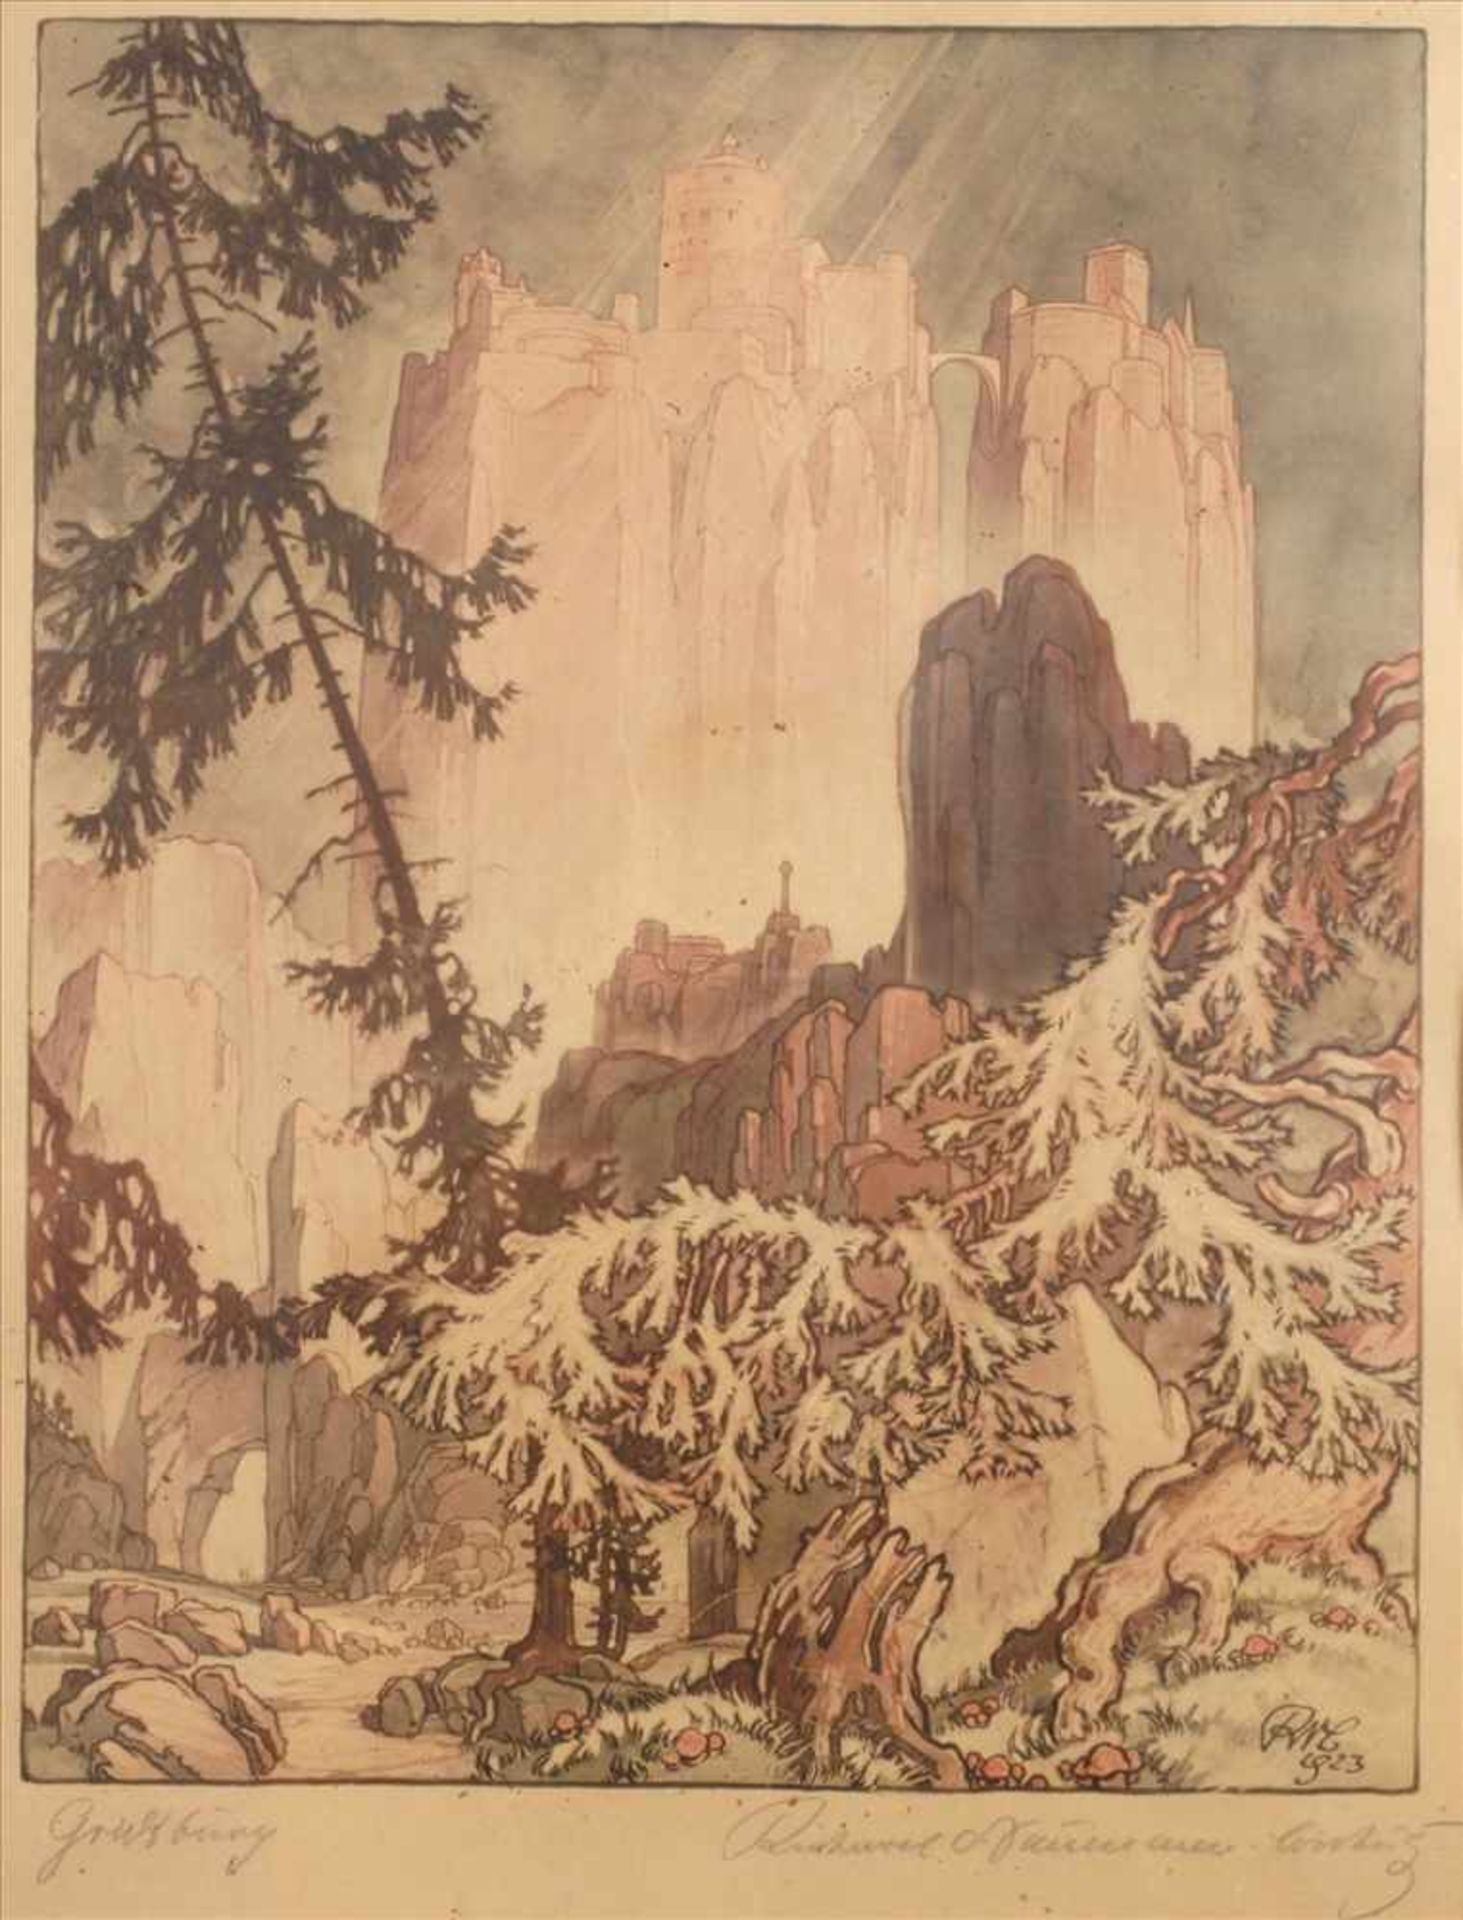 Richard Naumann-Coschütz, "Gralsburg"phantastische Landschaft mit sagenumwobener Burg, auf hohem